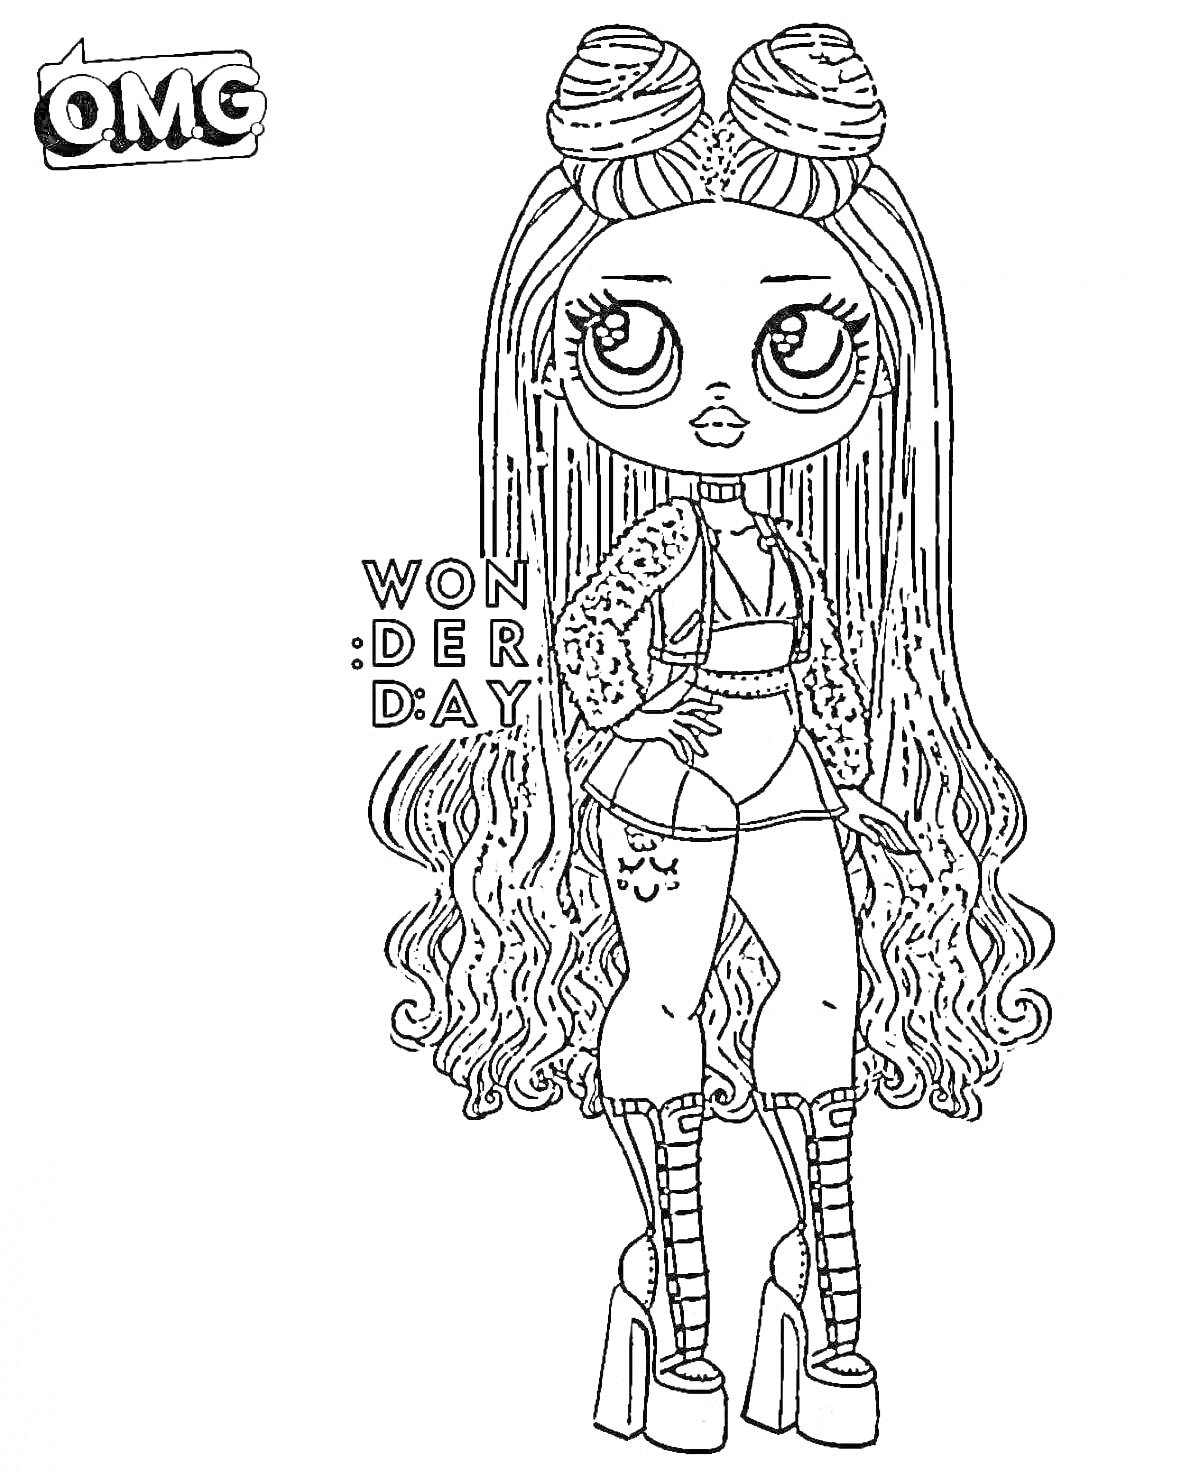 ЛОЛ Омг кукла с длинными волосами и высокими сапогами, надпись 